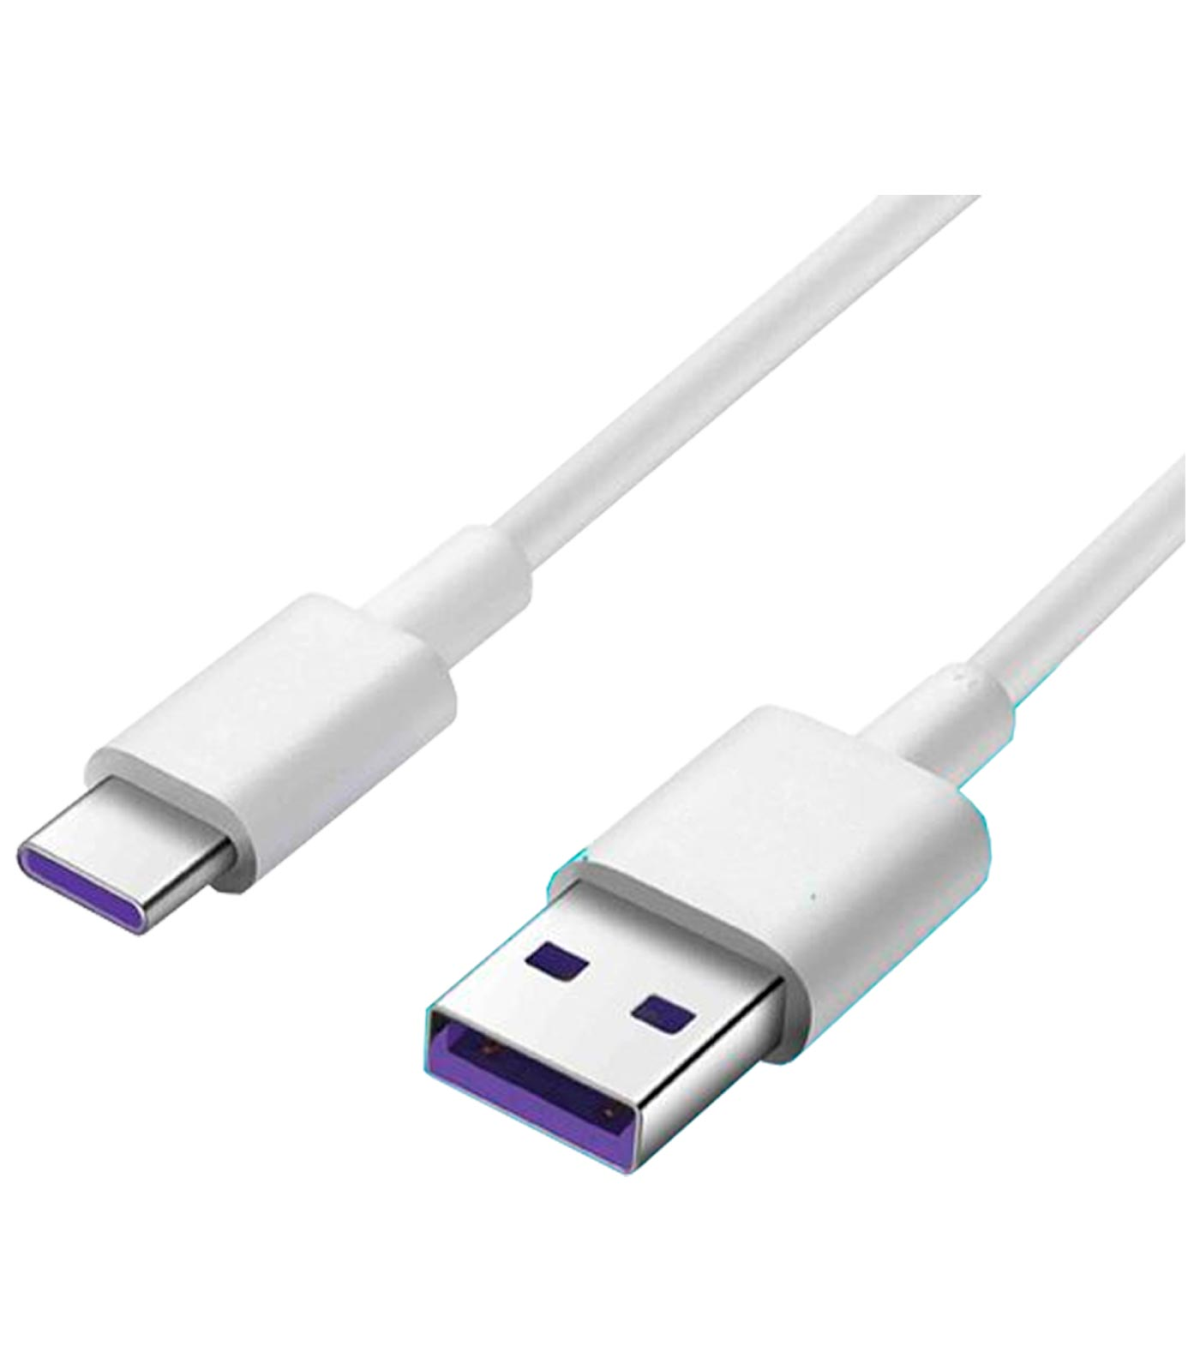 Cable USB C tipo C, carga y datos móvil smartphone